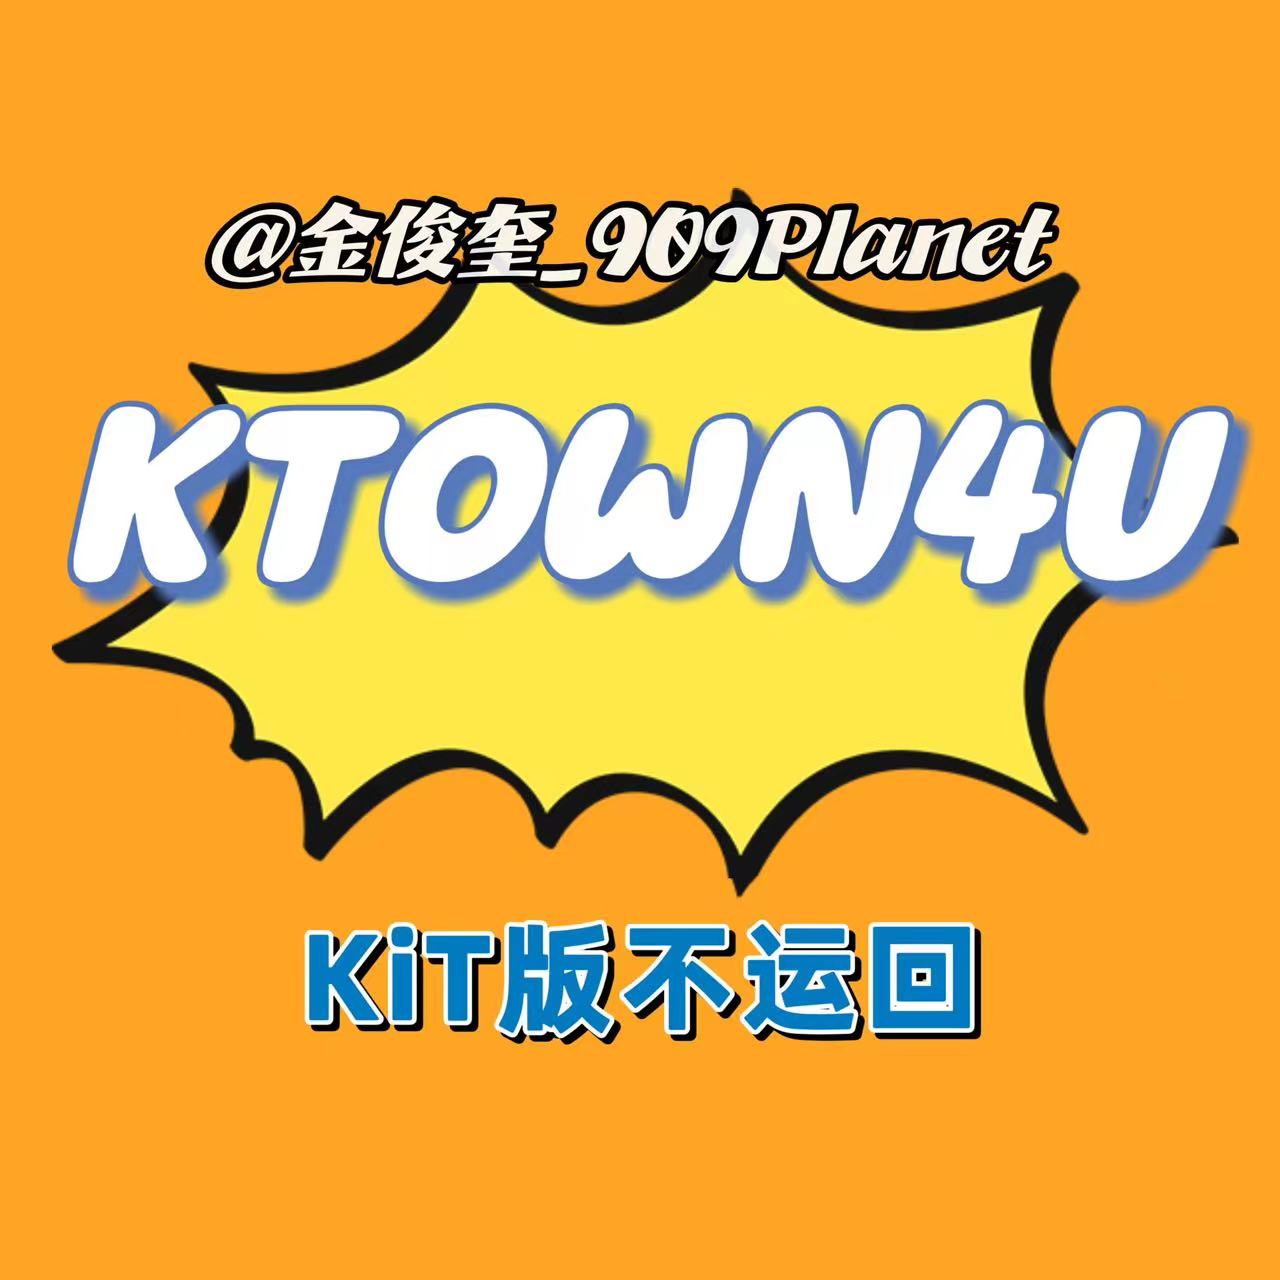 [拆卡专] [Ktown4u Special Gift] TREASURE - 2ND FULL ALBUM [REBOOT] KiT ALBUM_金俊奎909Planet